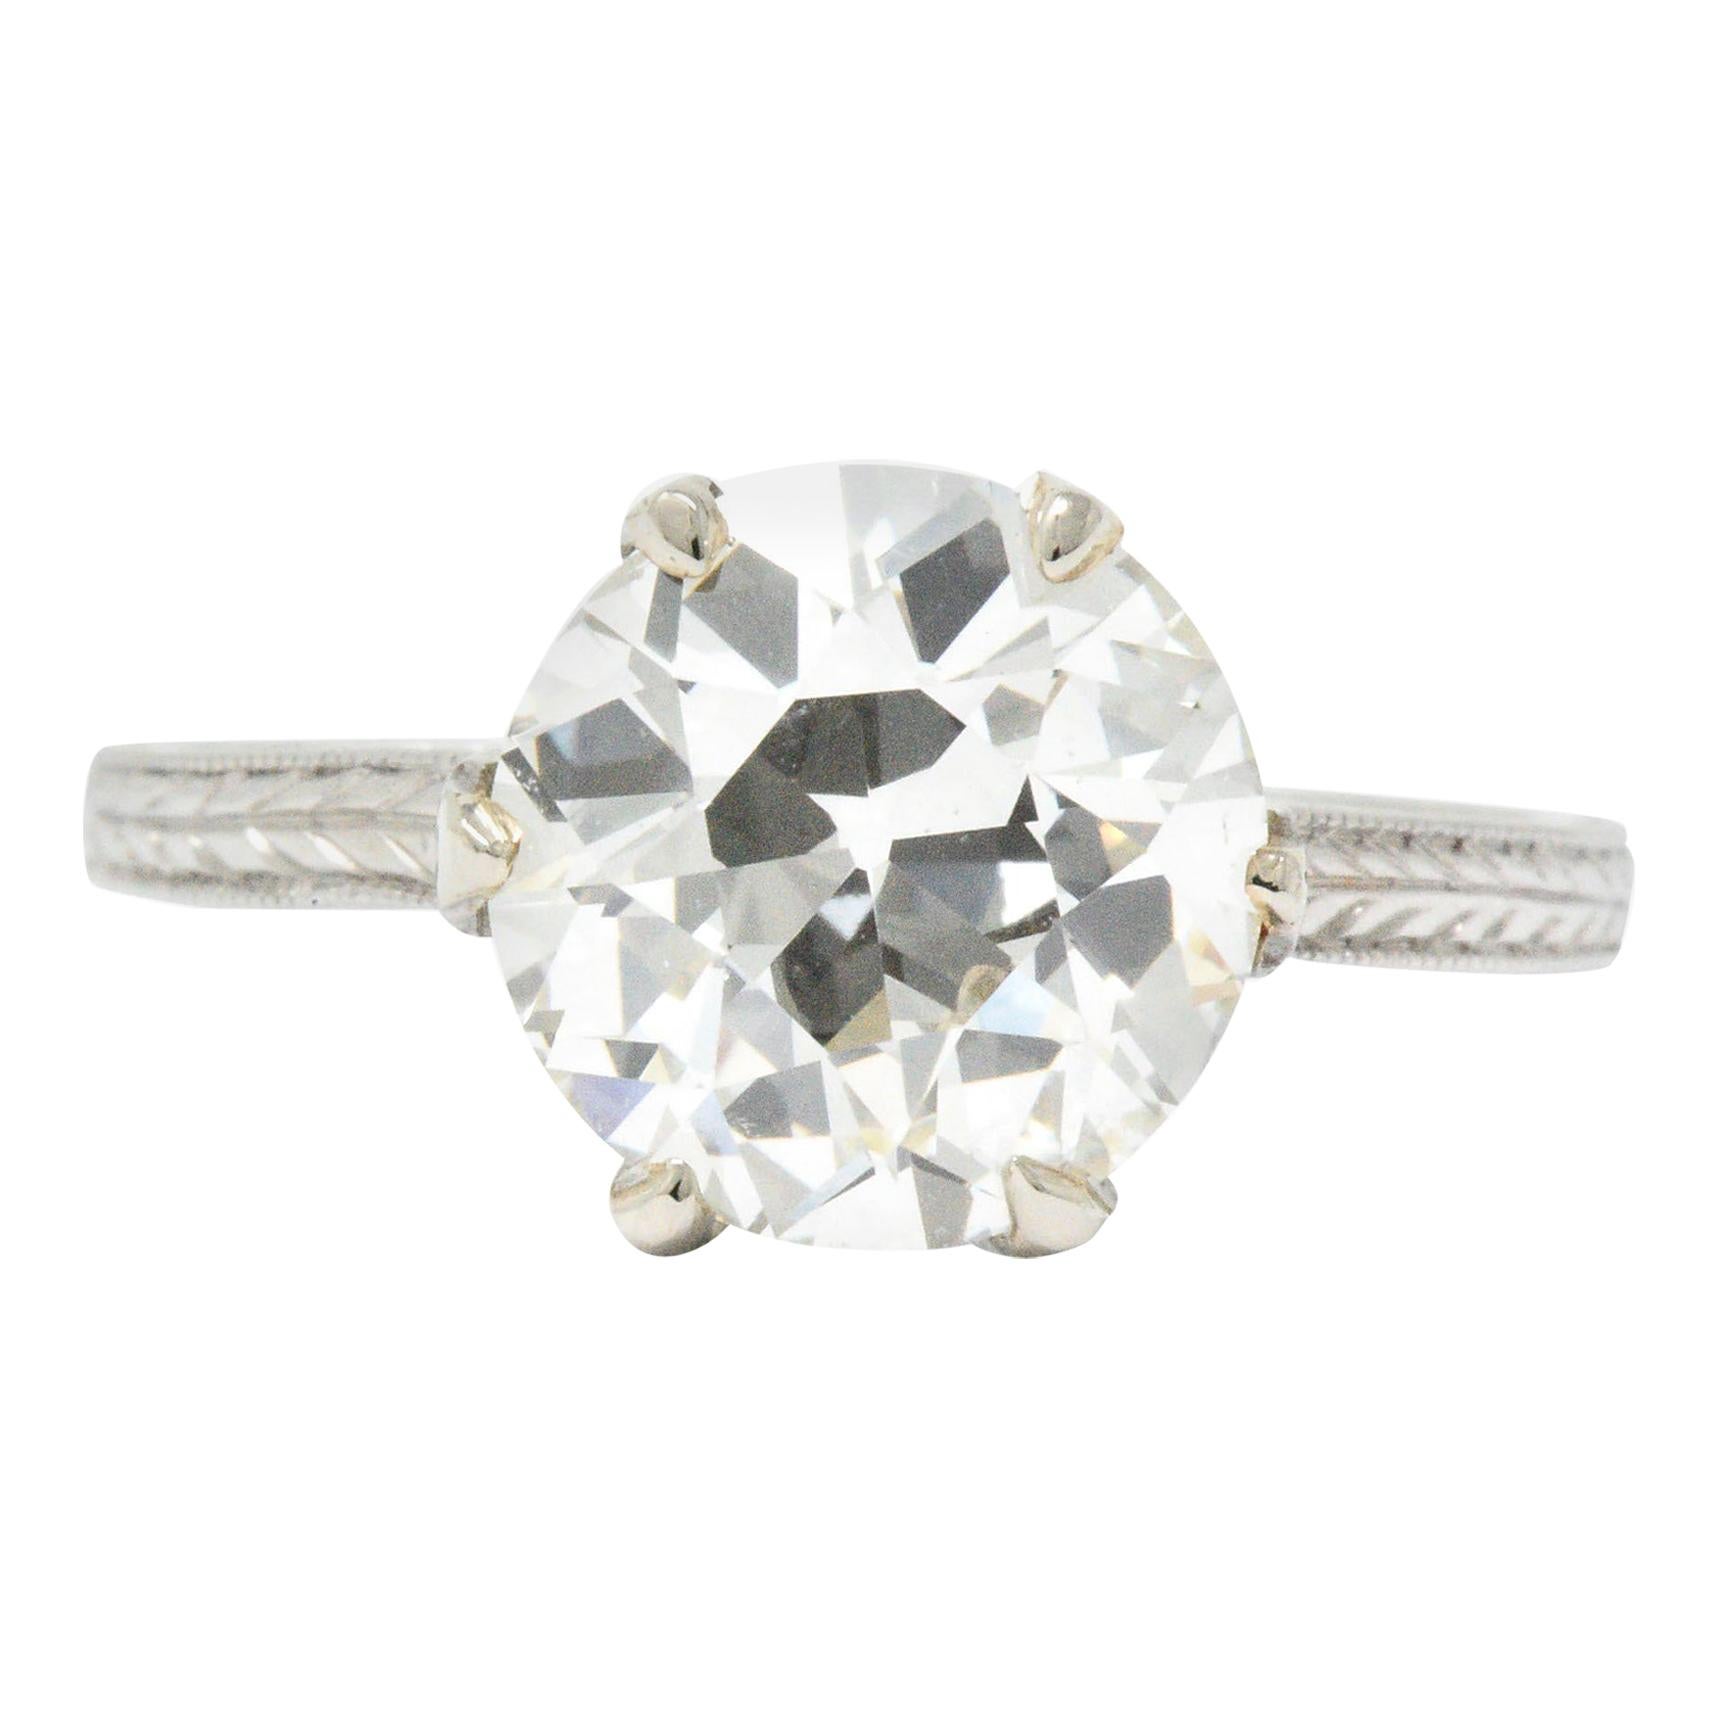 Art Deco 2.65 Carat Diamond Platinum Solitaire Engagement Ring GIA